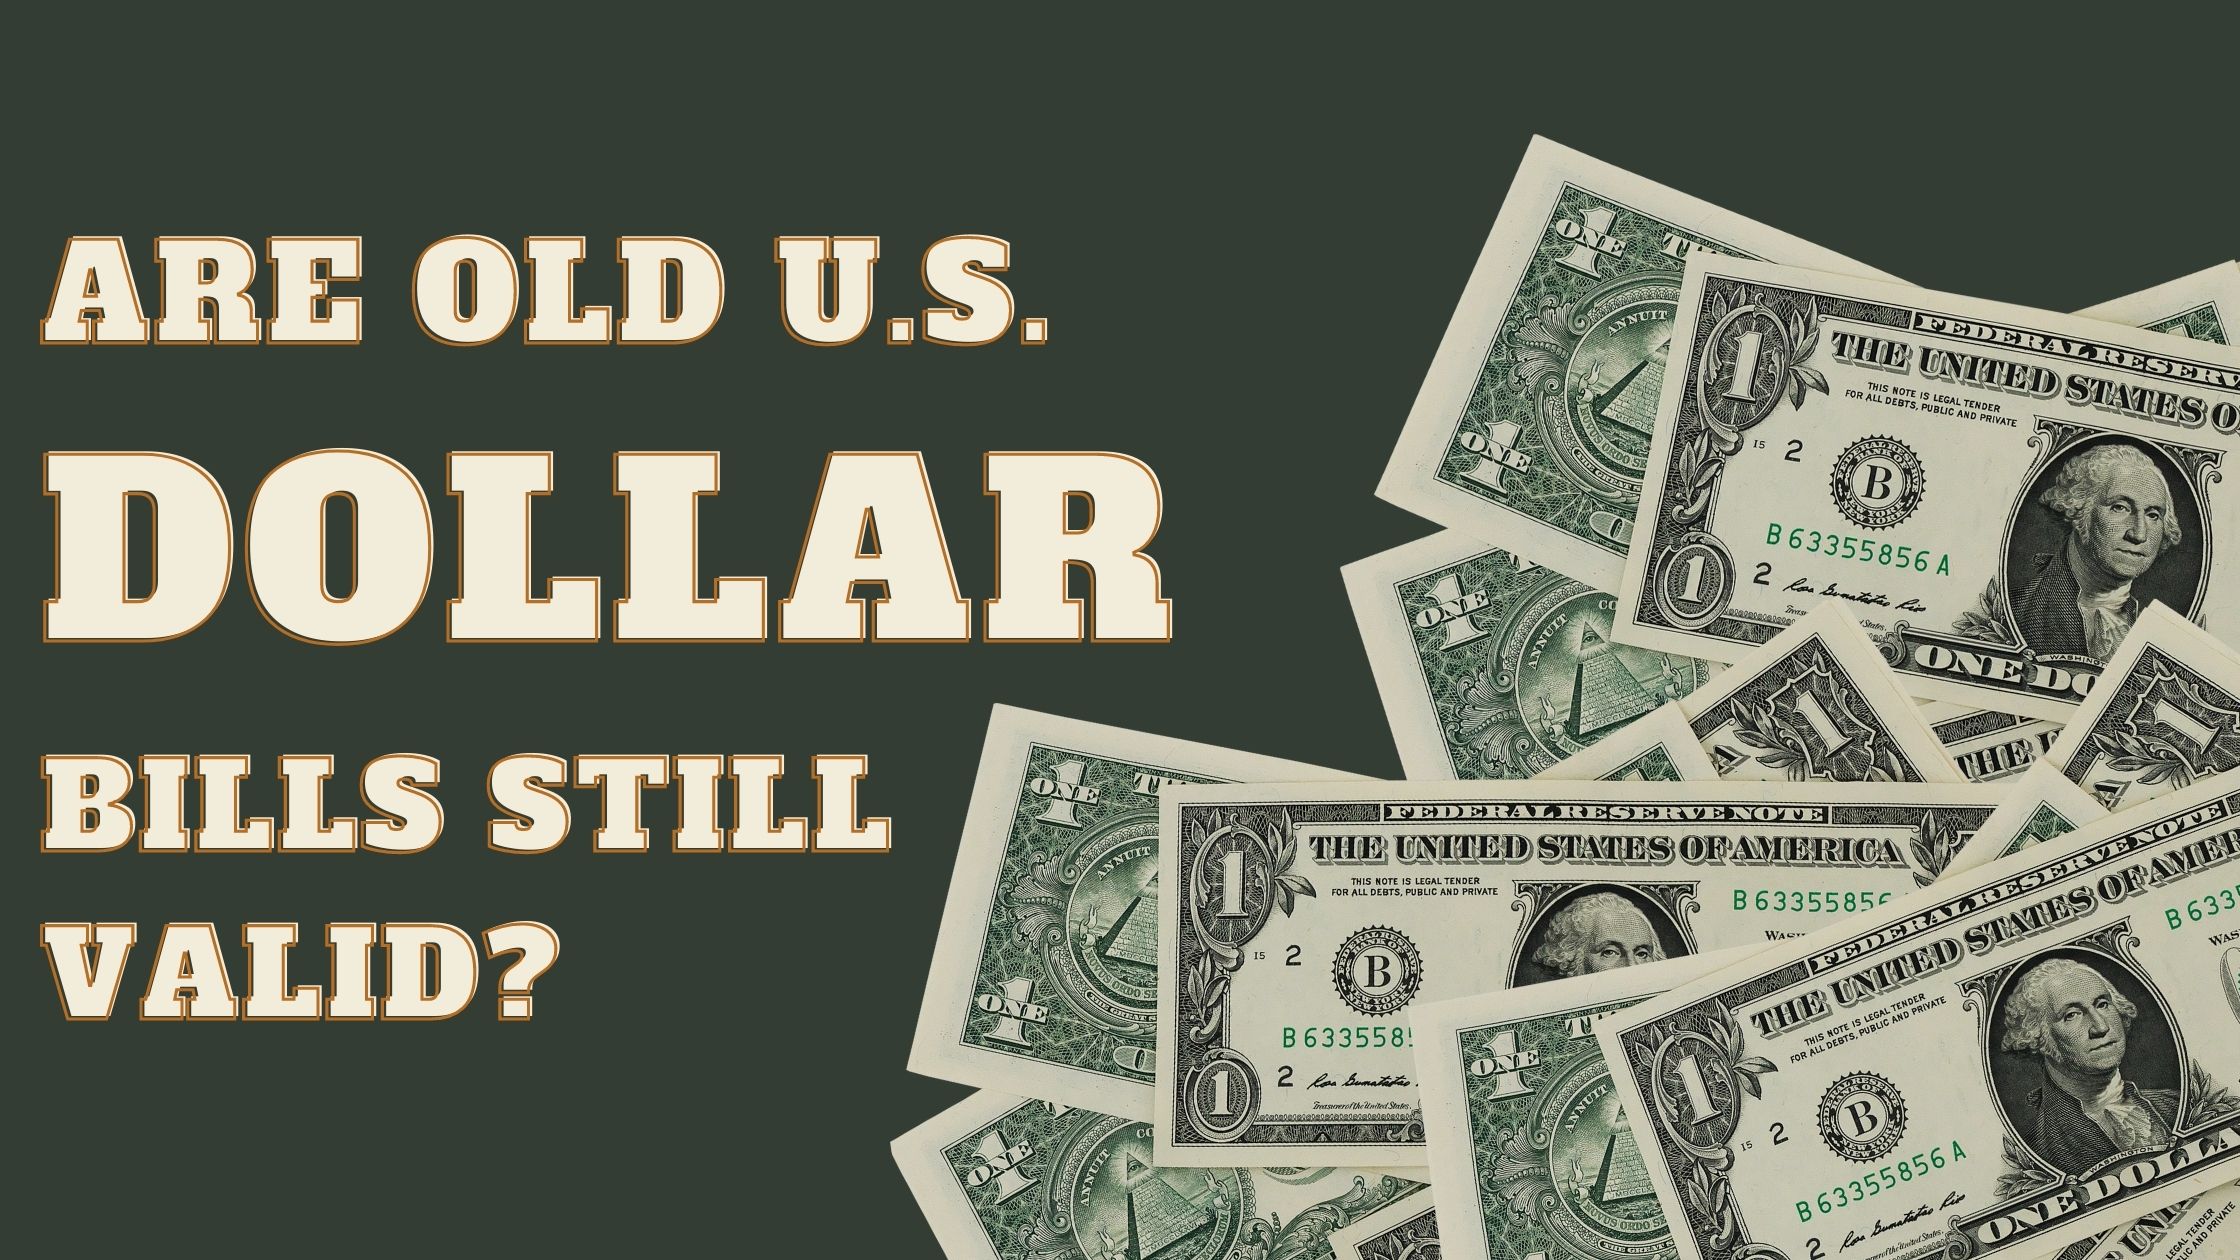 Are Old U.S. Dollar Bills Still Valid